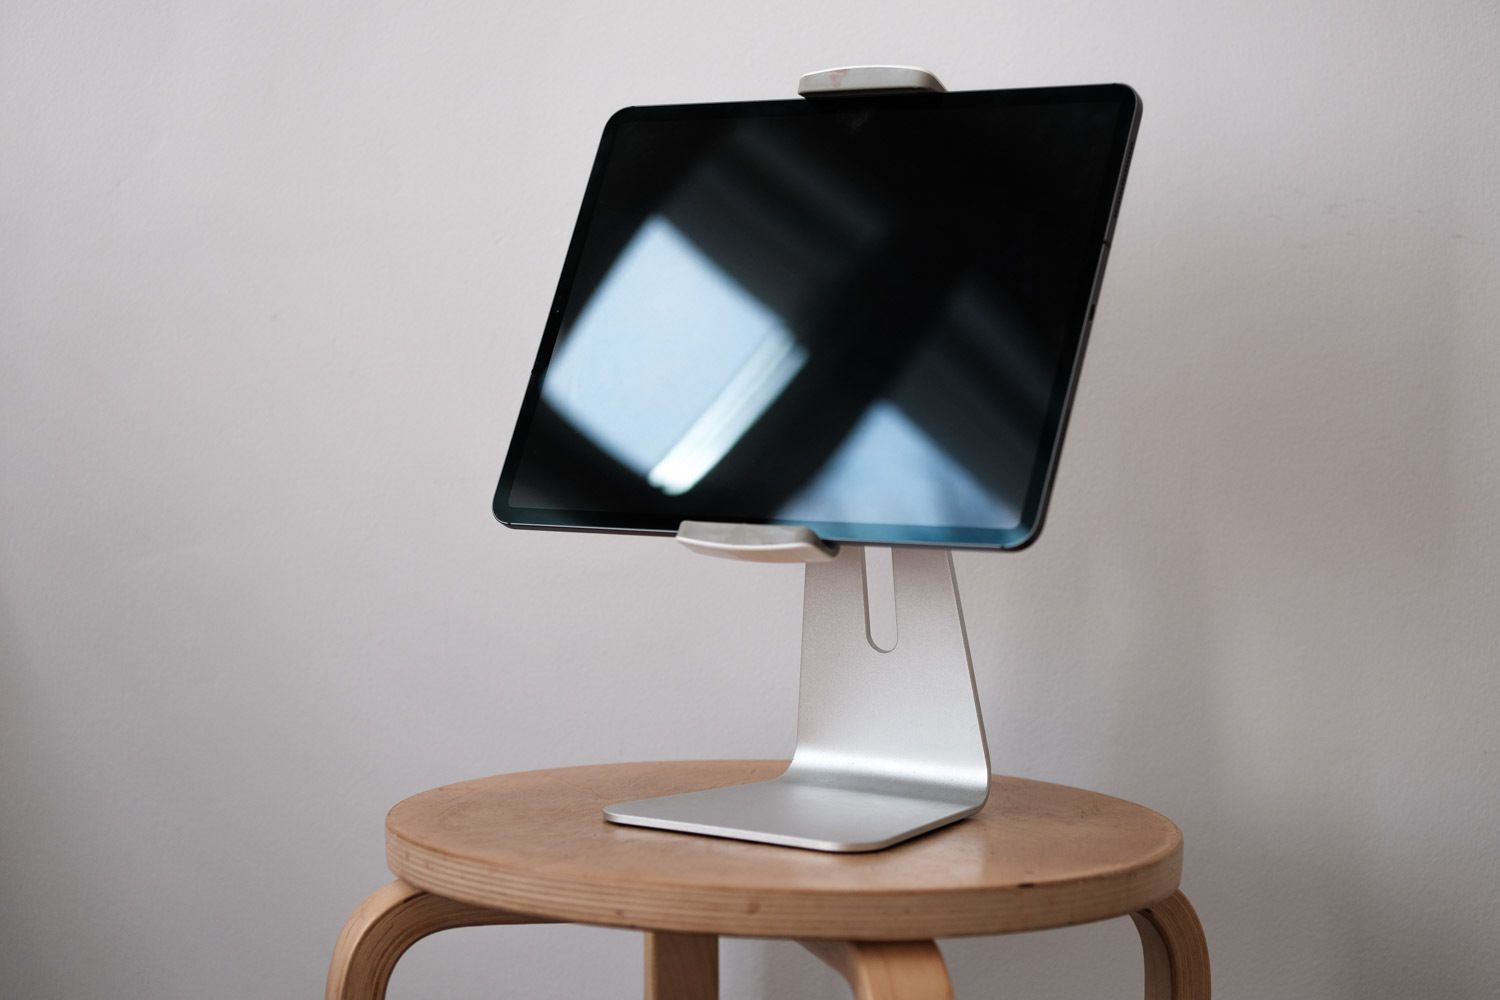 iPad držený ve stojanu iPad Pro od společnosti AboveTech / Viozon a položený na stoličce